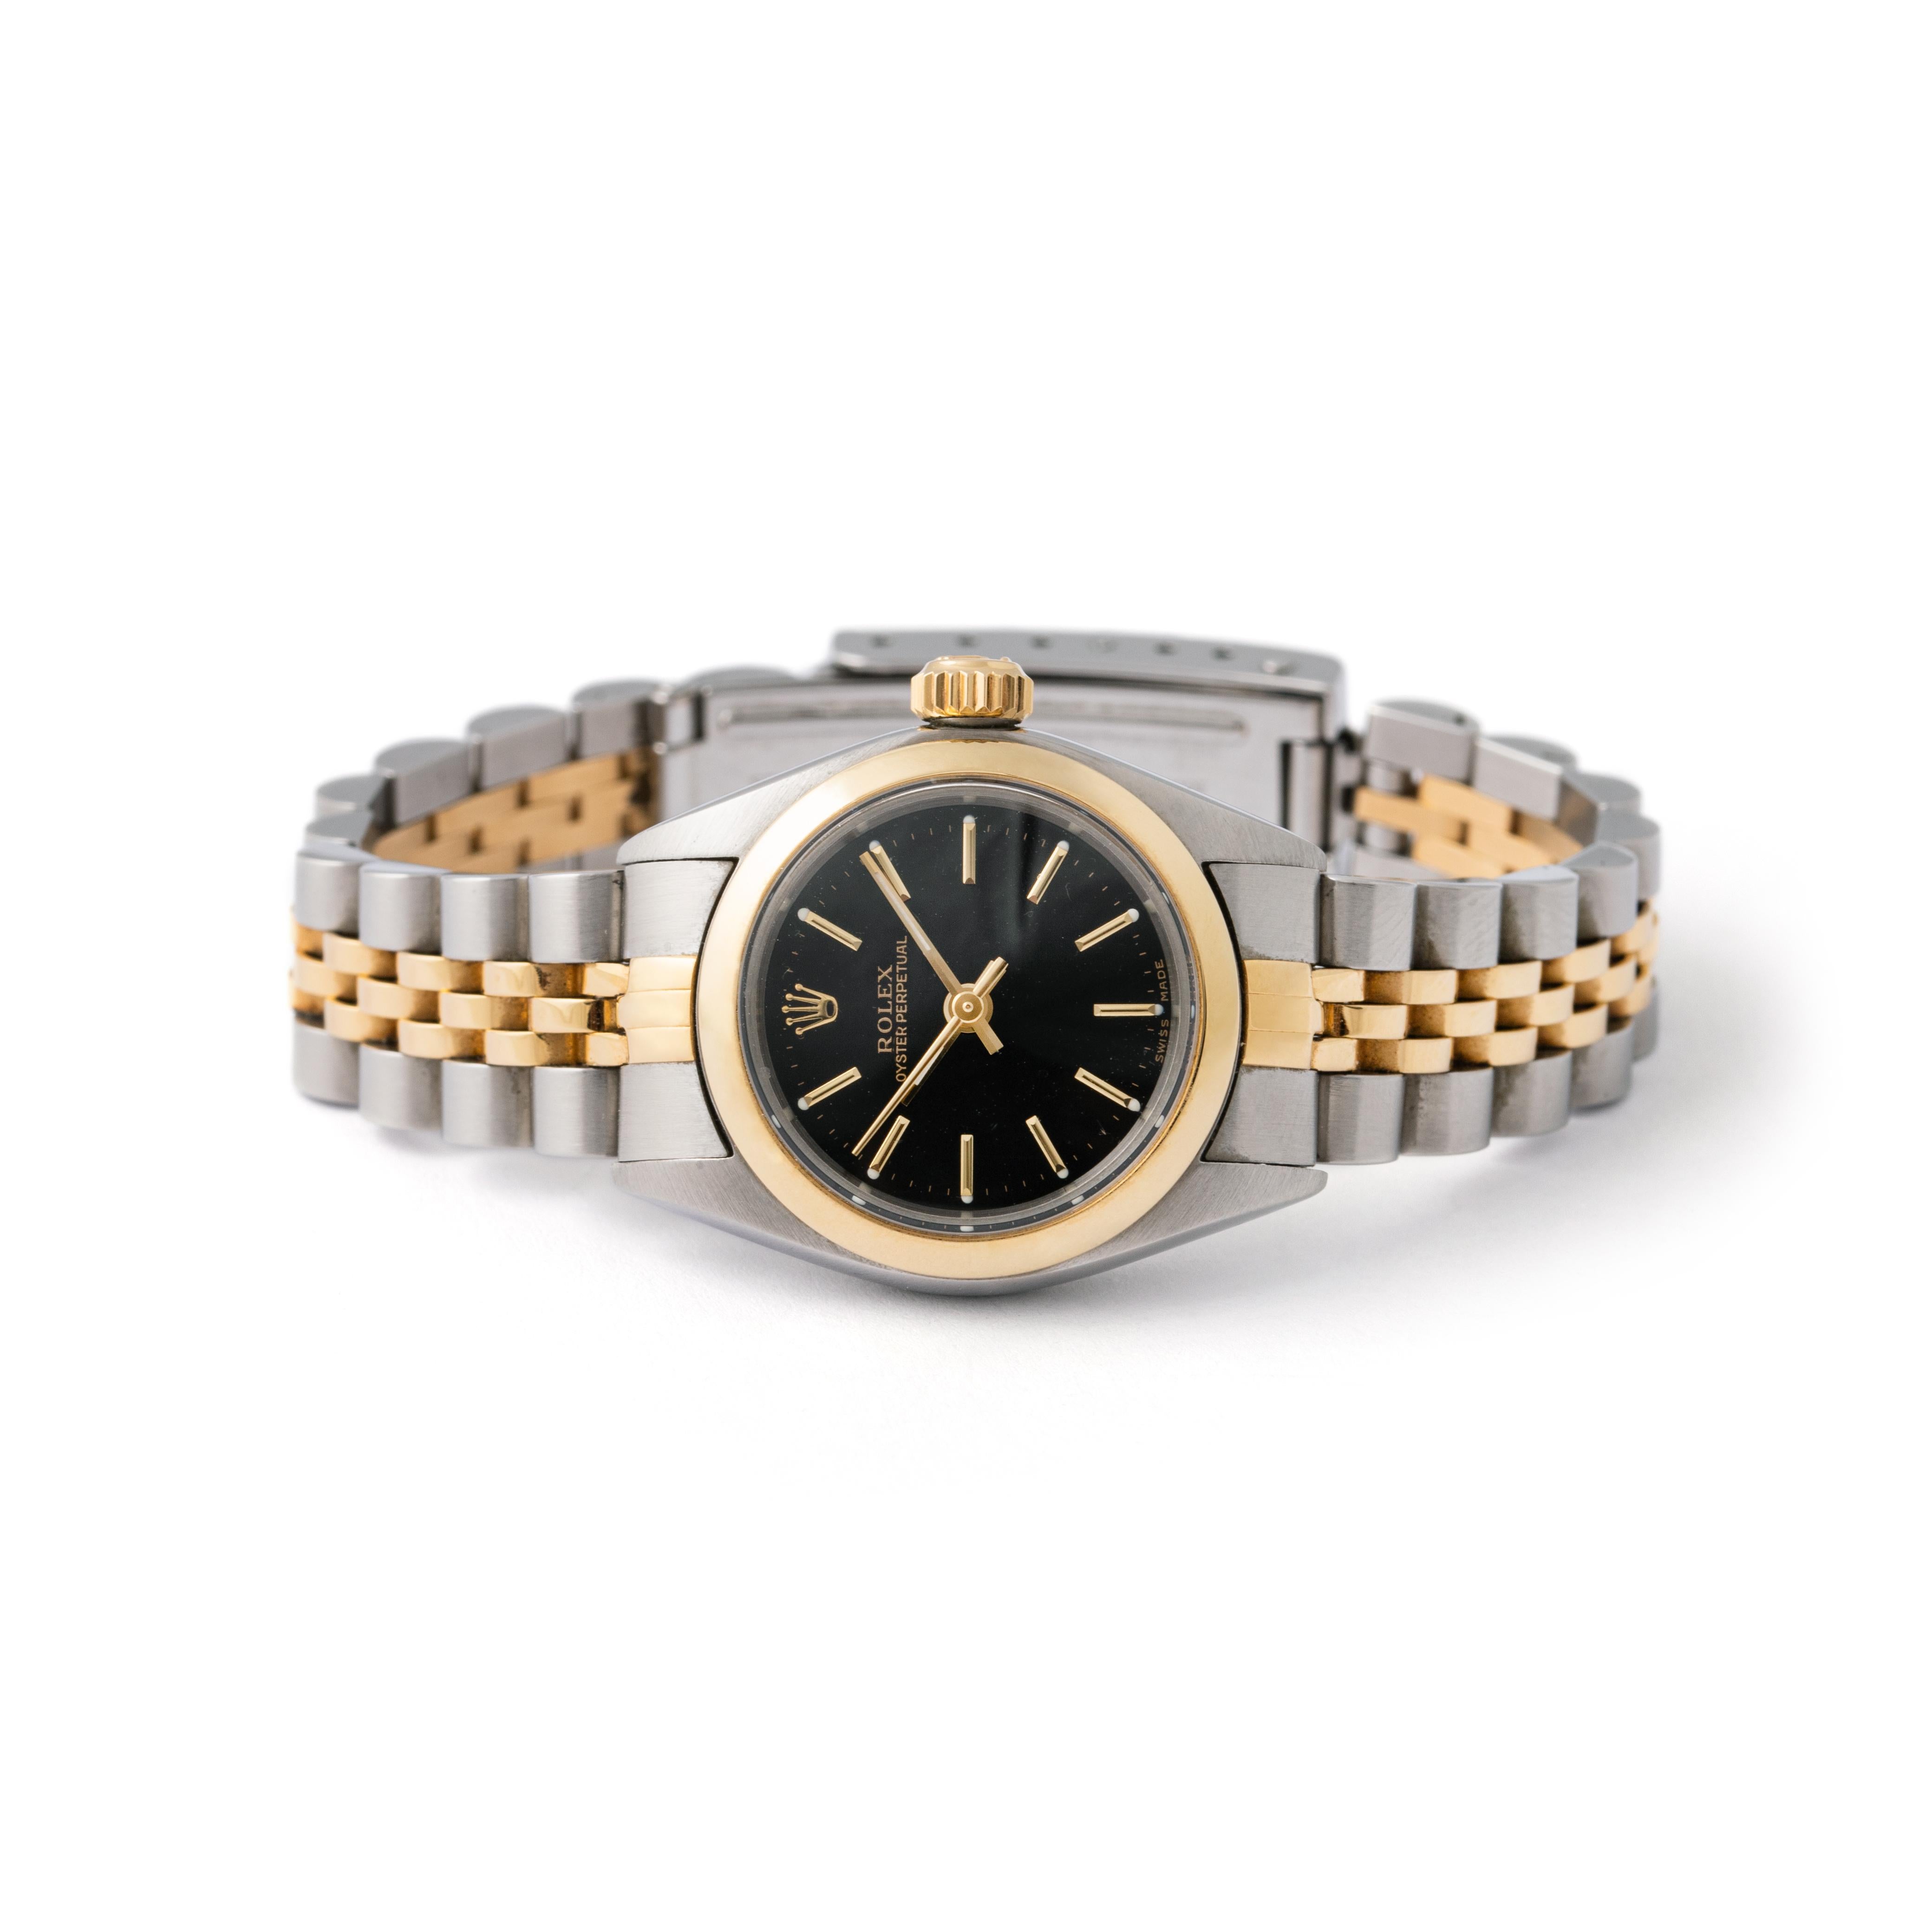 Rolex Lady Oyster Perpetual en or jaune 18 carats et acier.
Diamètre du boîtier : 26 mm.
Longueur du poignet : environ 15.70 centimètres.
Poids total : 49,38 grammes.

Nous ne garantissons pas le fonctionnement de cette montre.
Veuillez noter que le